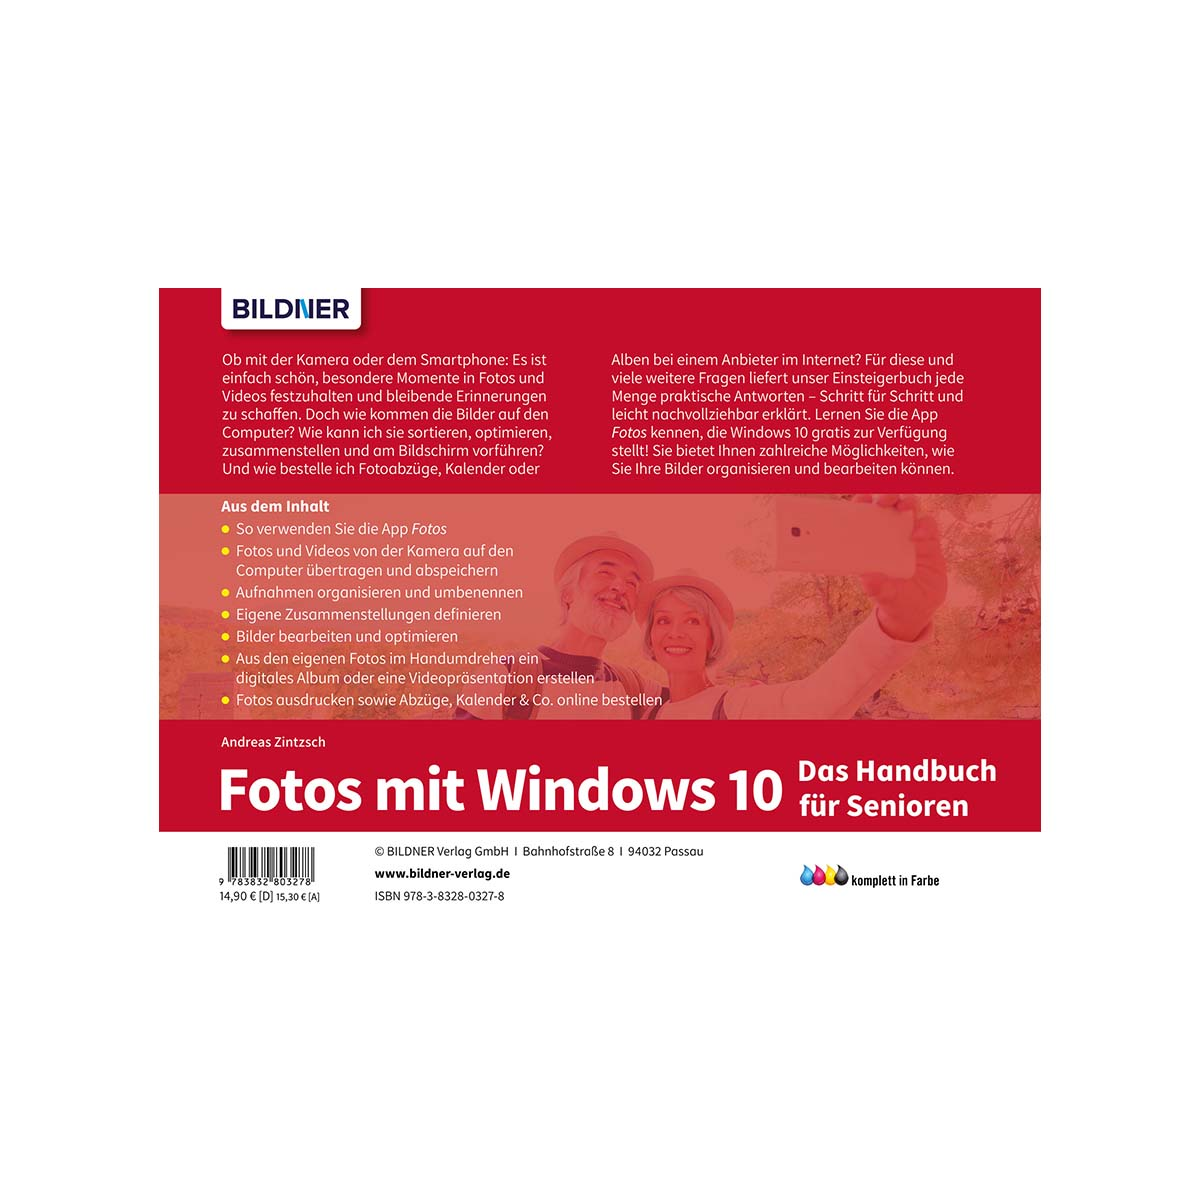 Videos Fotos und und - bearbeiten Fotos Das organisieren Windows für mit Senioren: 10 Handbuch